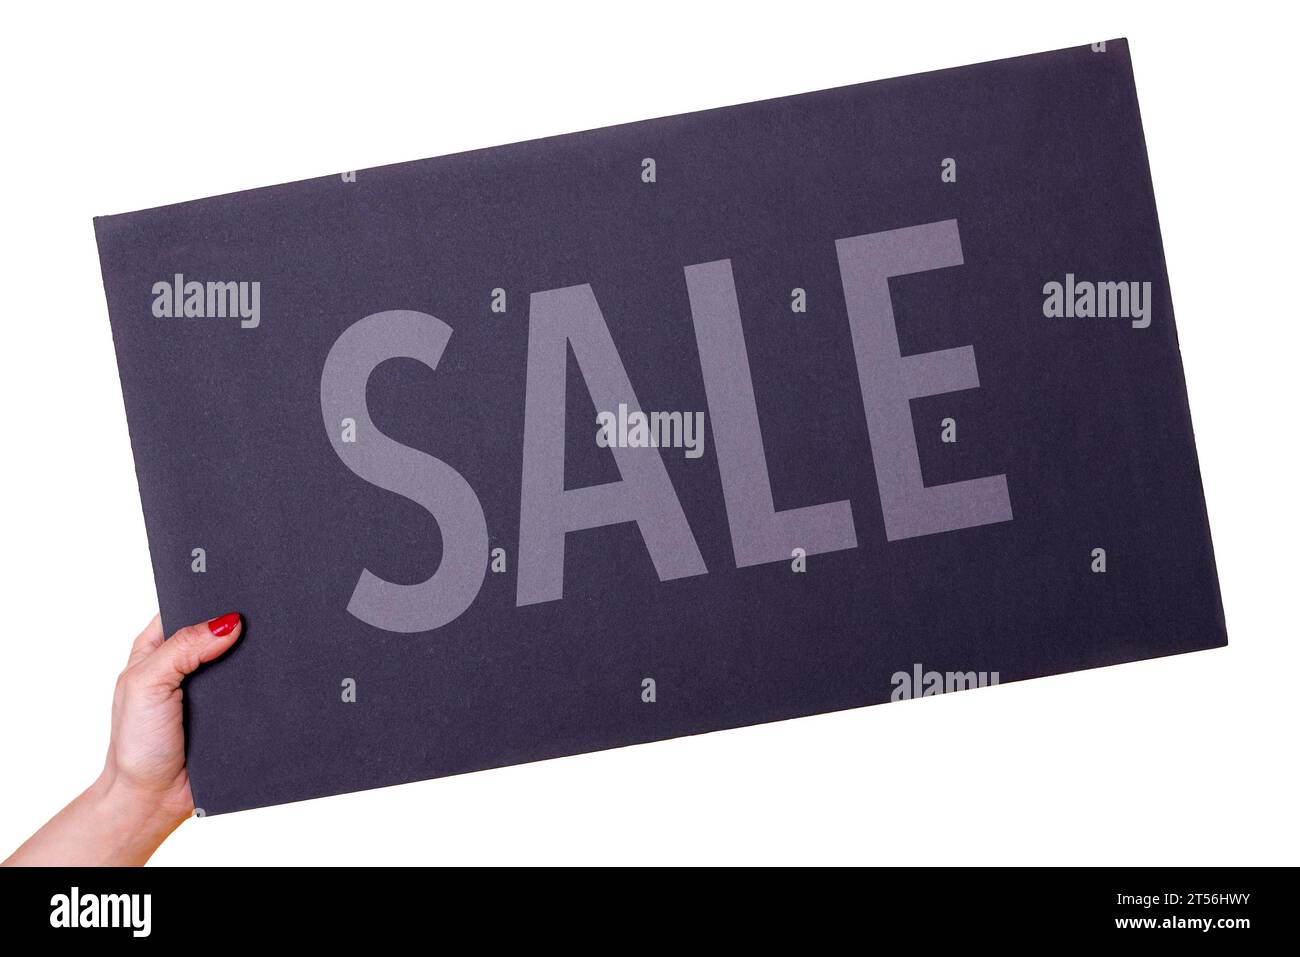 Main de femme tenant une affiche noire DE VENTE sur fond transparent. Prise de vue en studio. Concept commercial Banque D'Images